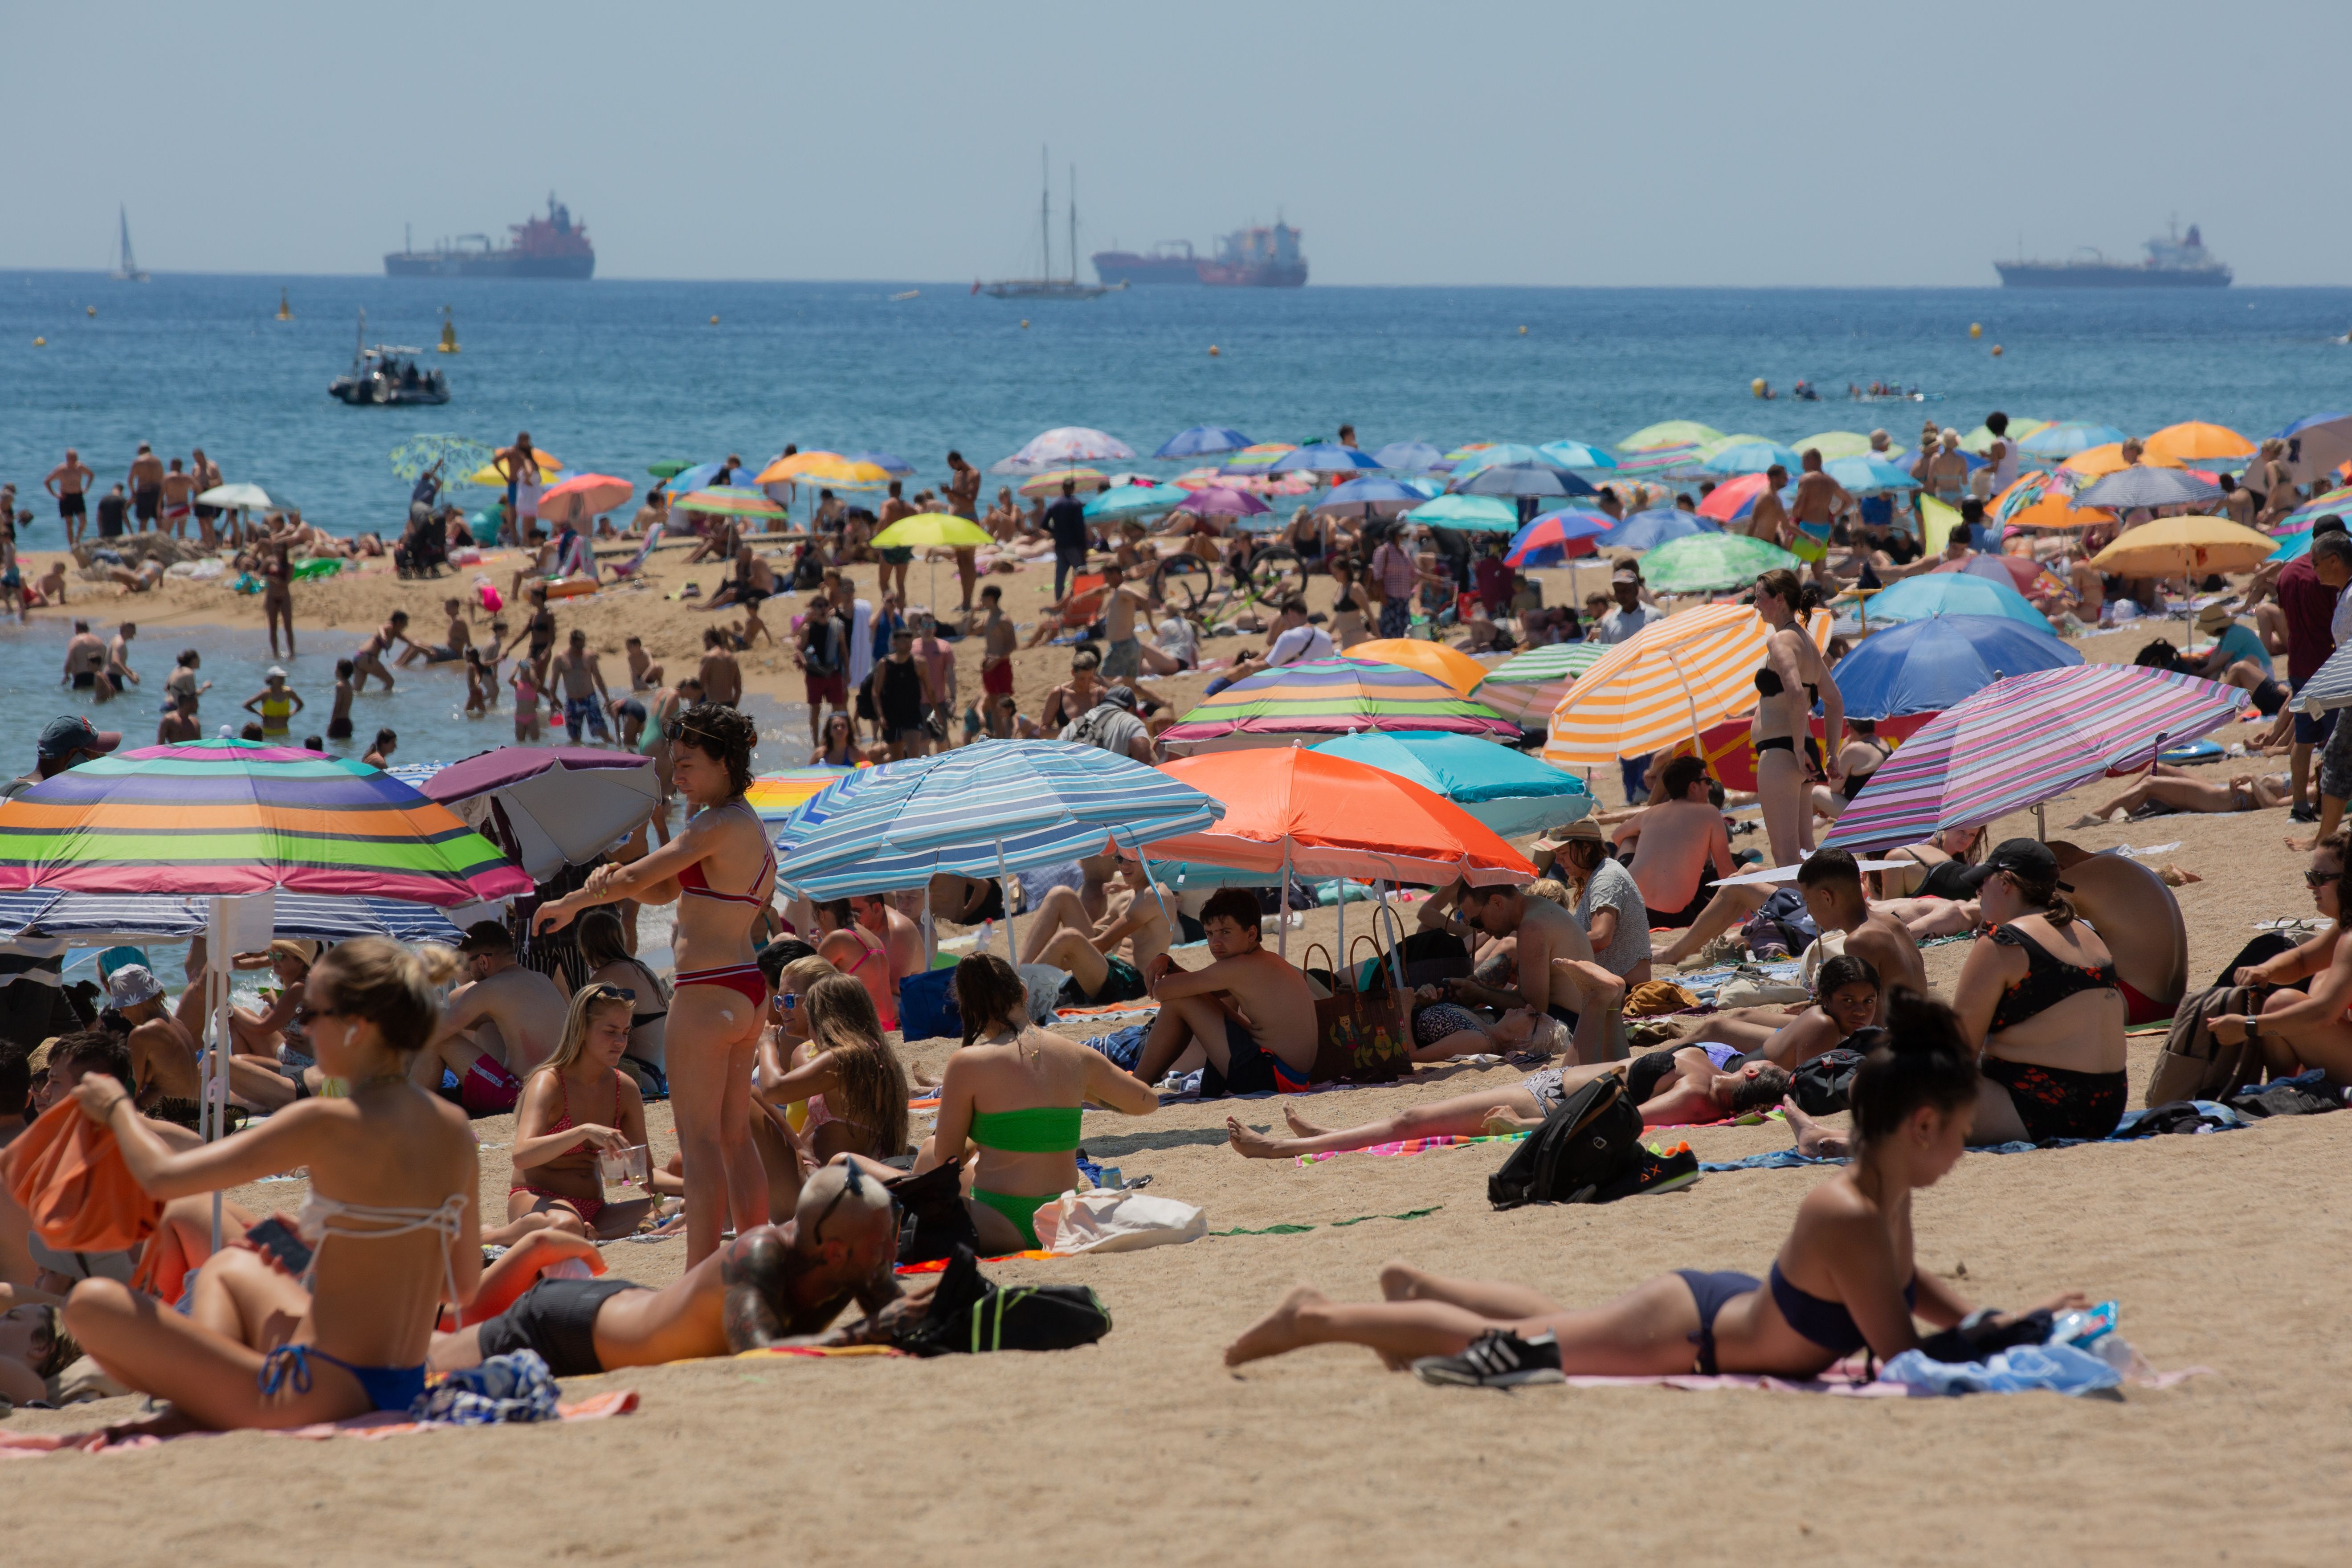 La 'guerra de las sombrillas' se endurece: hasta 3.000 euros de multa por reservar sitio en la playa